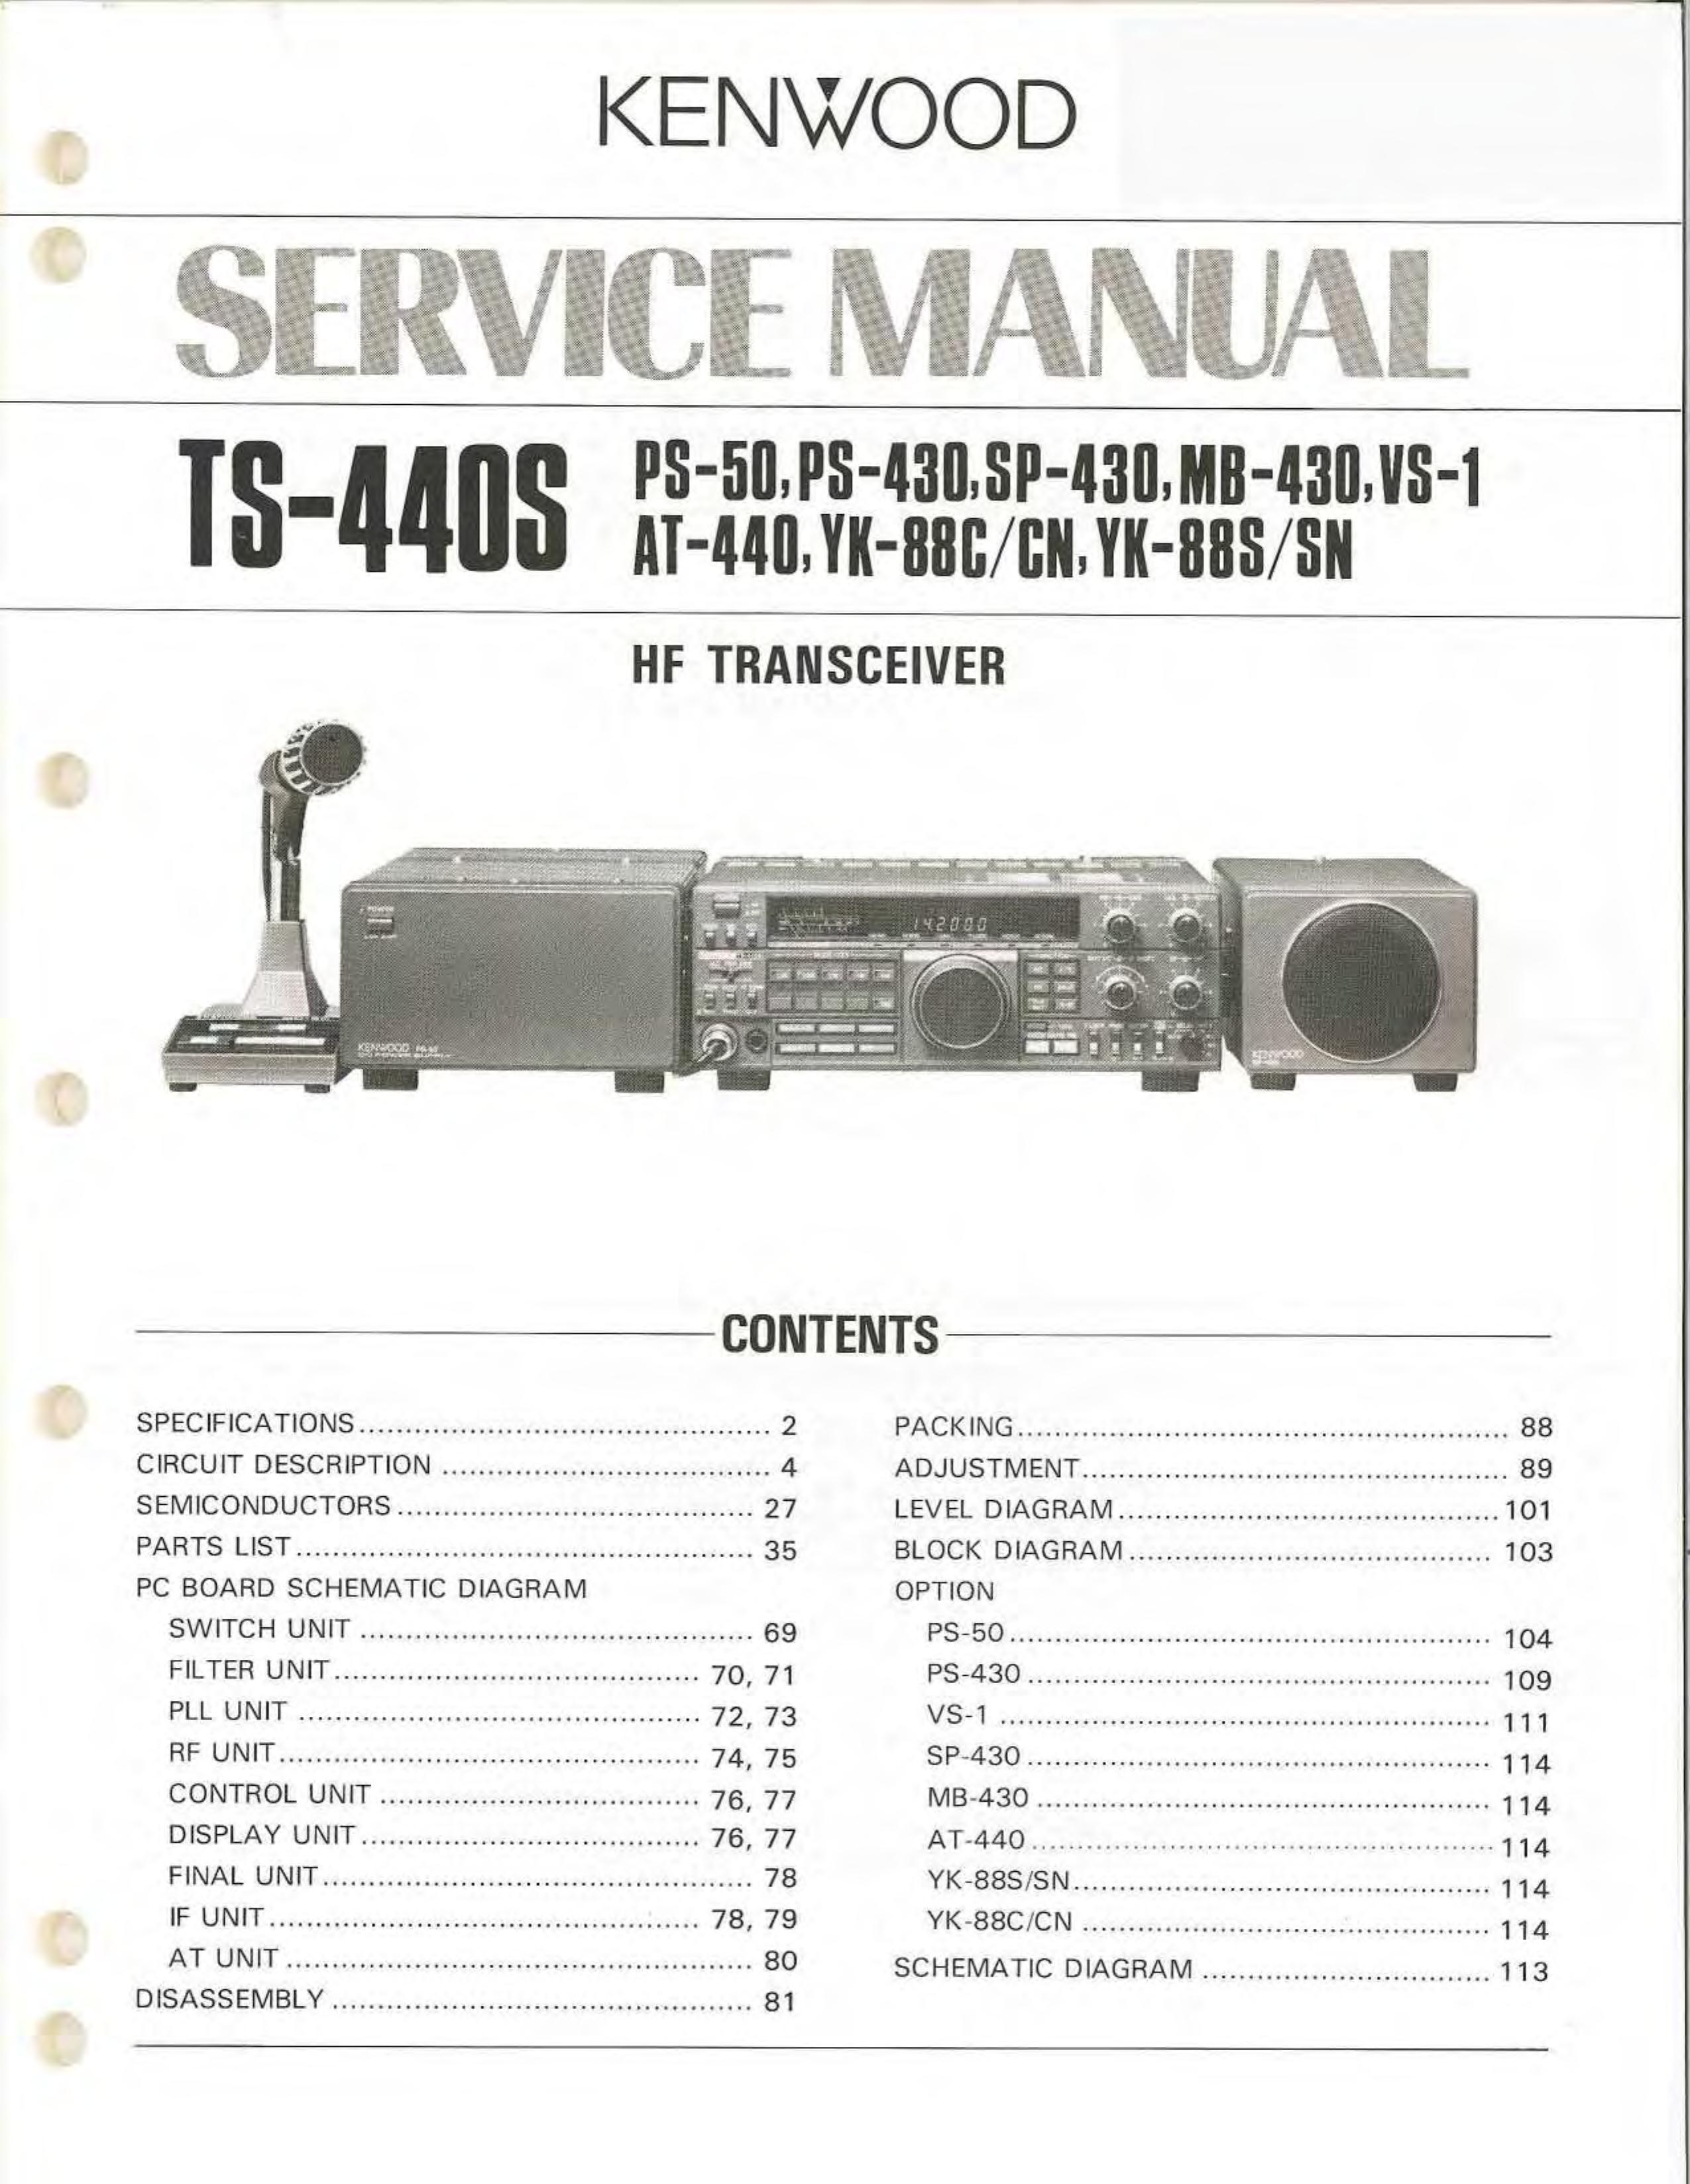 Kenwood AT-440 Marine Radio User Manual